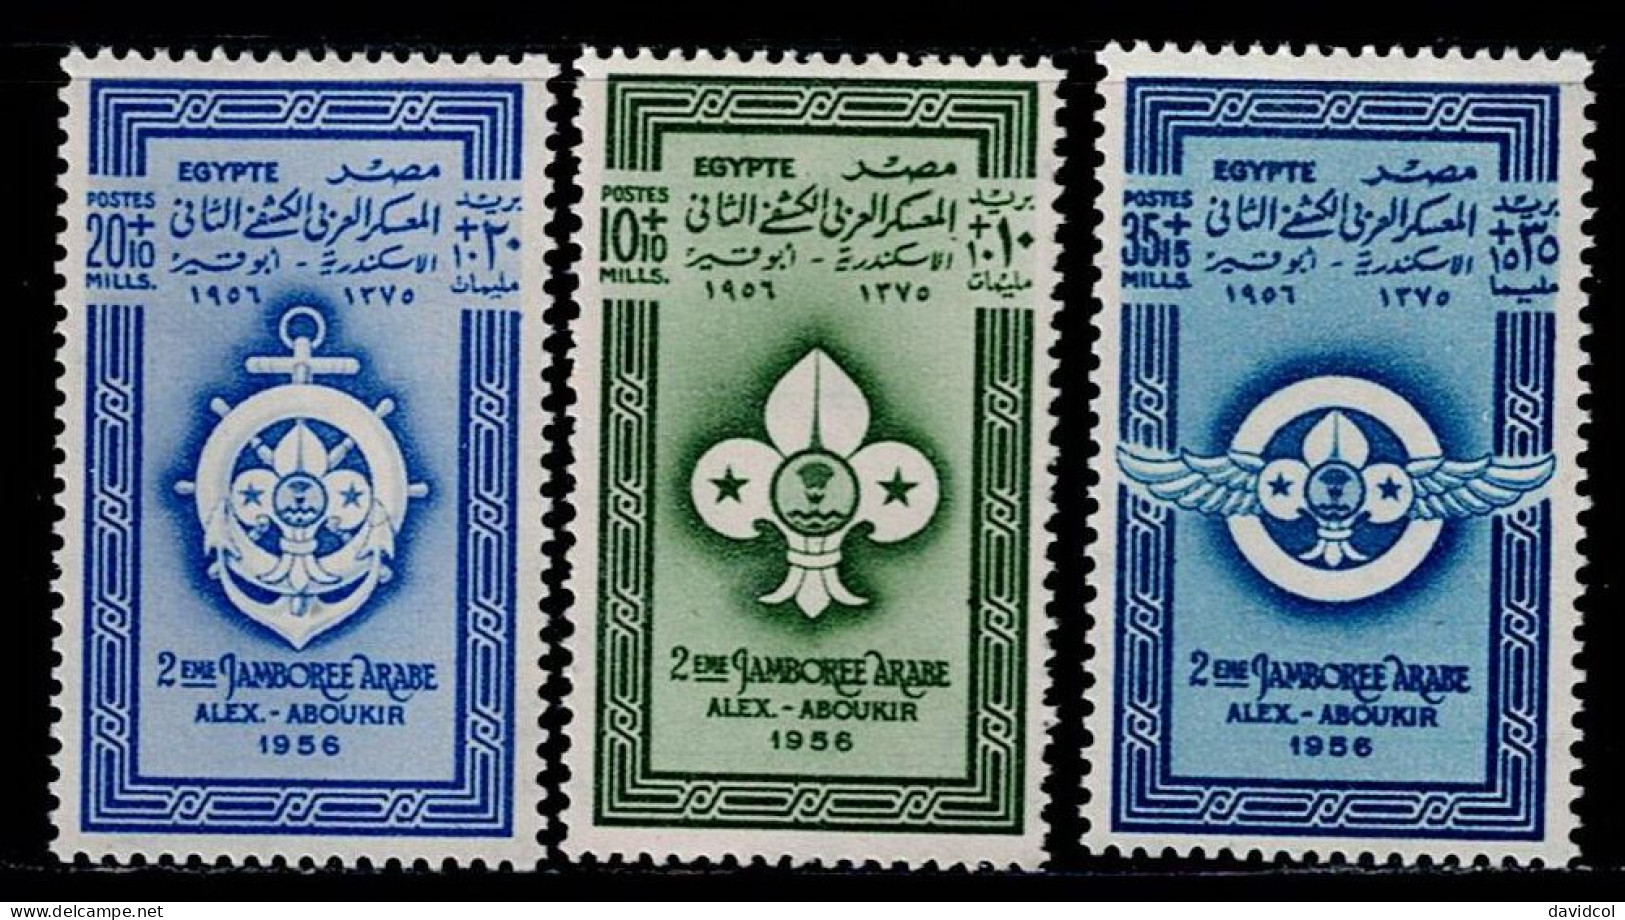 EGI-01- EGYPT - 1956 - MNH -SCOUTS- 2ND ARAB SCOUT JAMBOREE - Nuovi